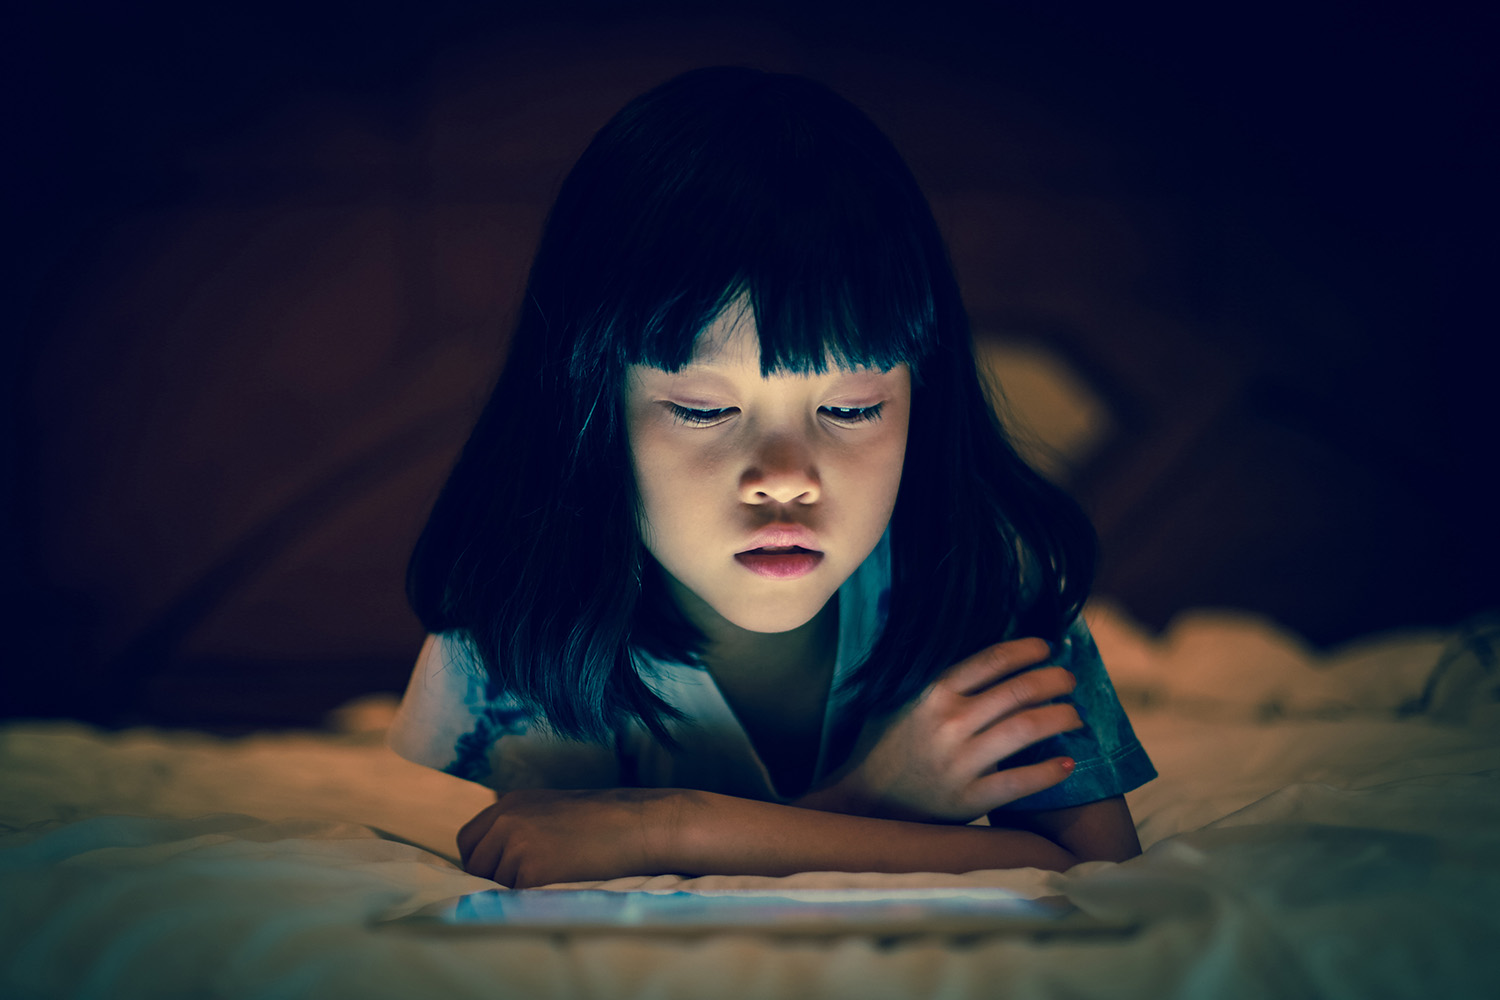 Mädchen schaut auf ein Tablet; Umgebung dunkel